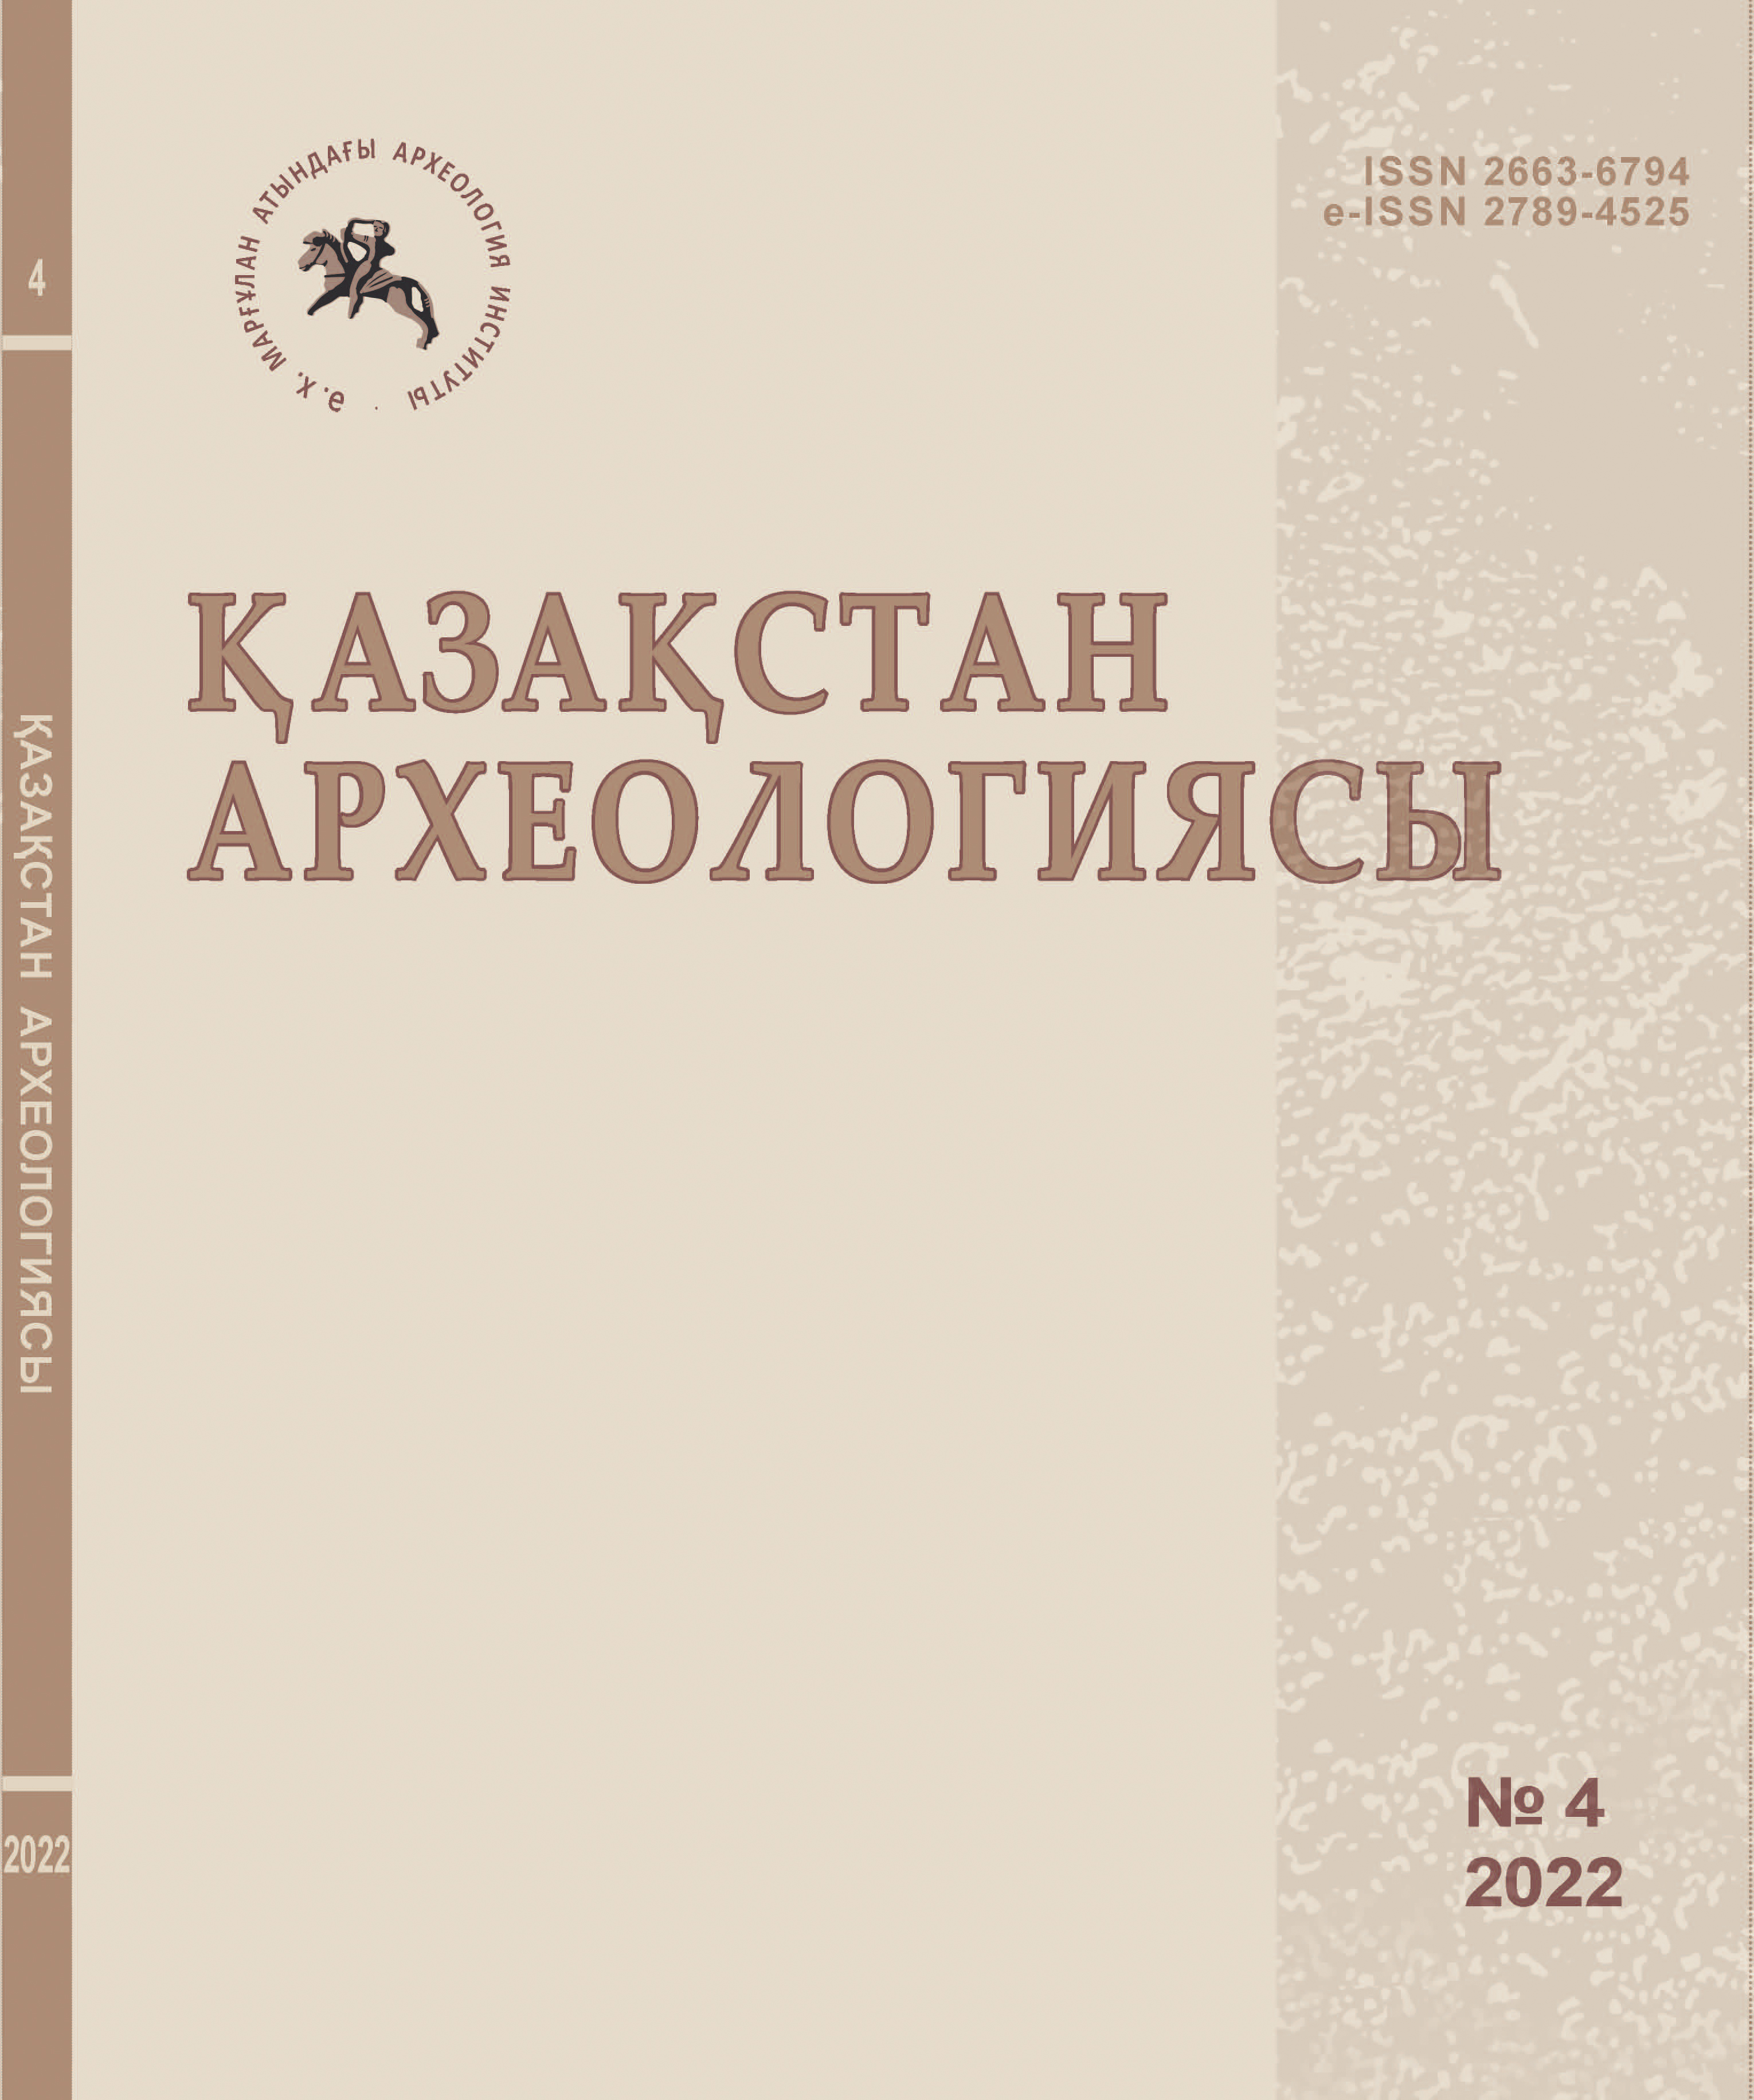 					Показать № 4 (18) (2022): Археология Казахстана
				